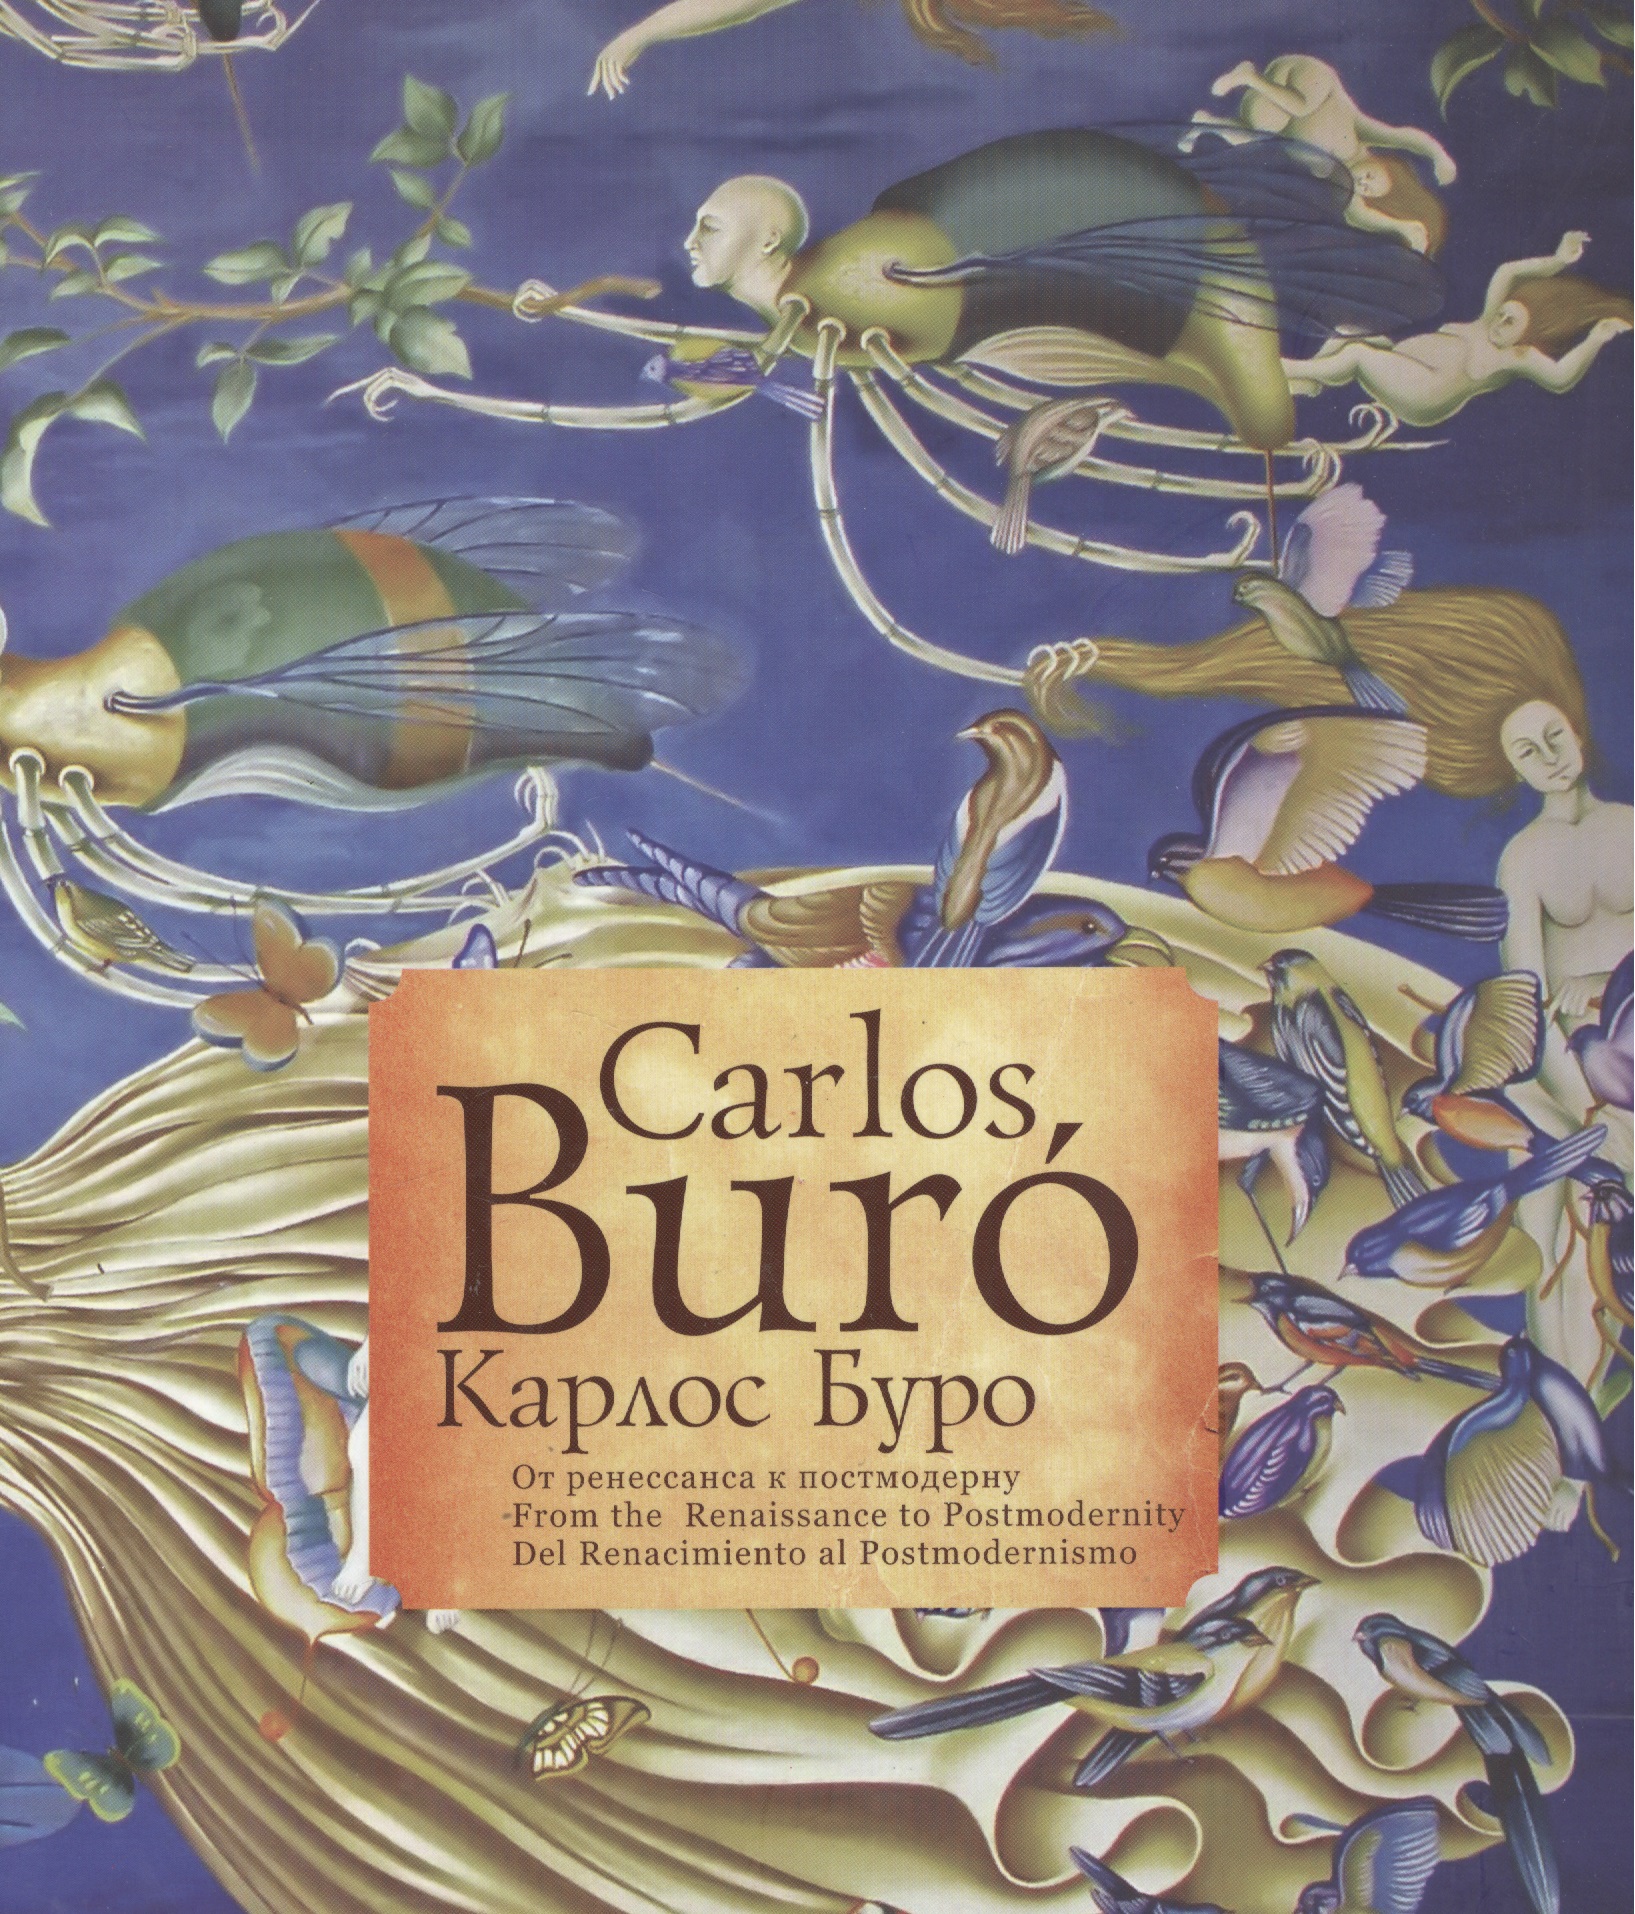 Carlos Buro          From the Renaissance to Postmodernity  Del Renacimiento al Postmodernismo